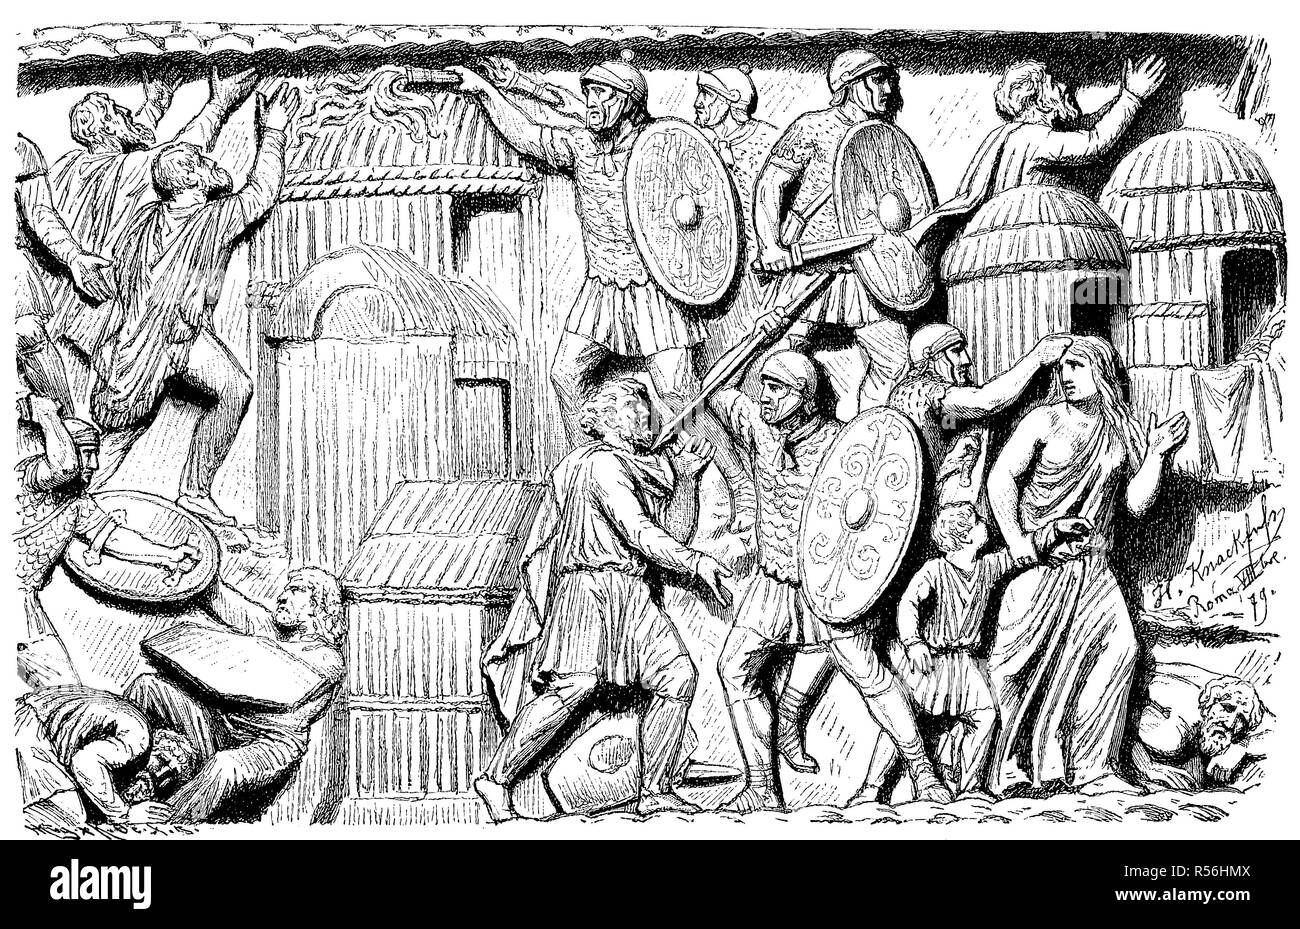 La destrucción de un pueblo germánico por los romanos, alivio en el Colonna Antonina, la columna de Marco Aurelio en Roma, 1800 Foto de stock